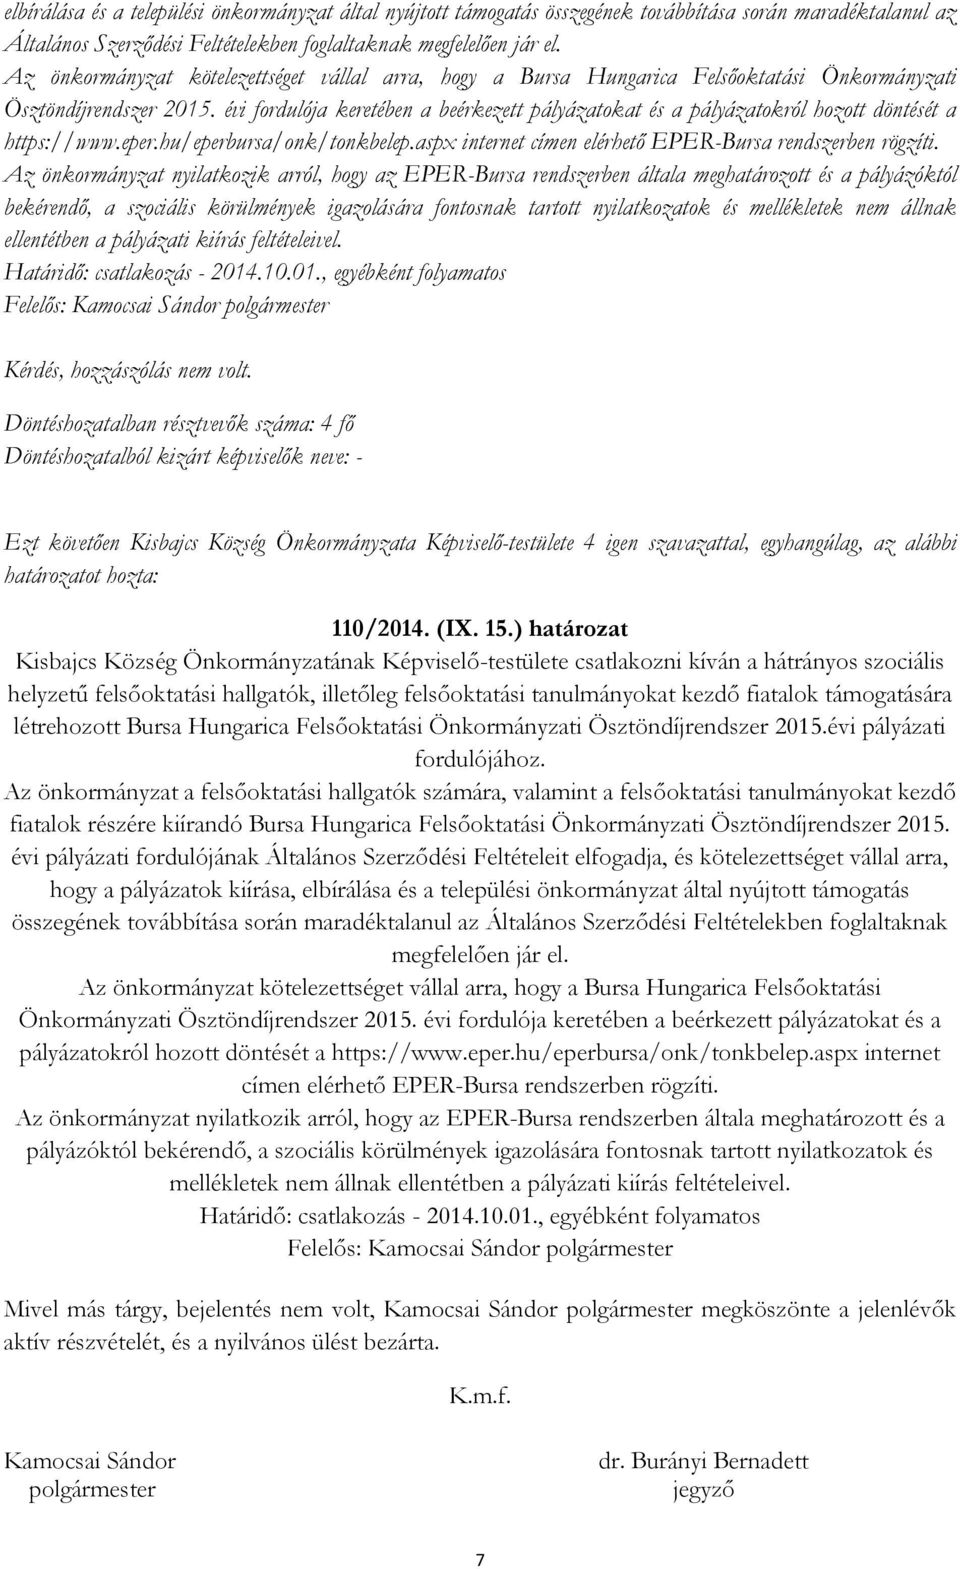 évi fordulója keretében a beérkezett pályázatokat és a pályázatokról hozott döntését a https://www.eper.hu/eperbursa/onk/tonkbelep.aspx internet címen elérhető EPER-Bursa rendszerben rögzíti.